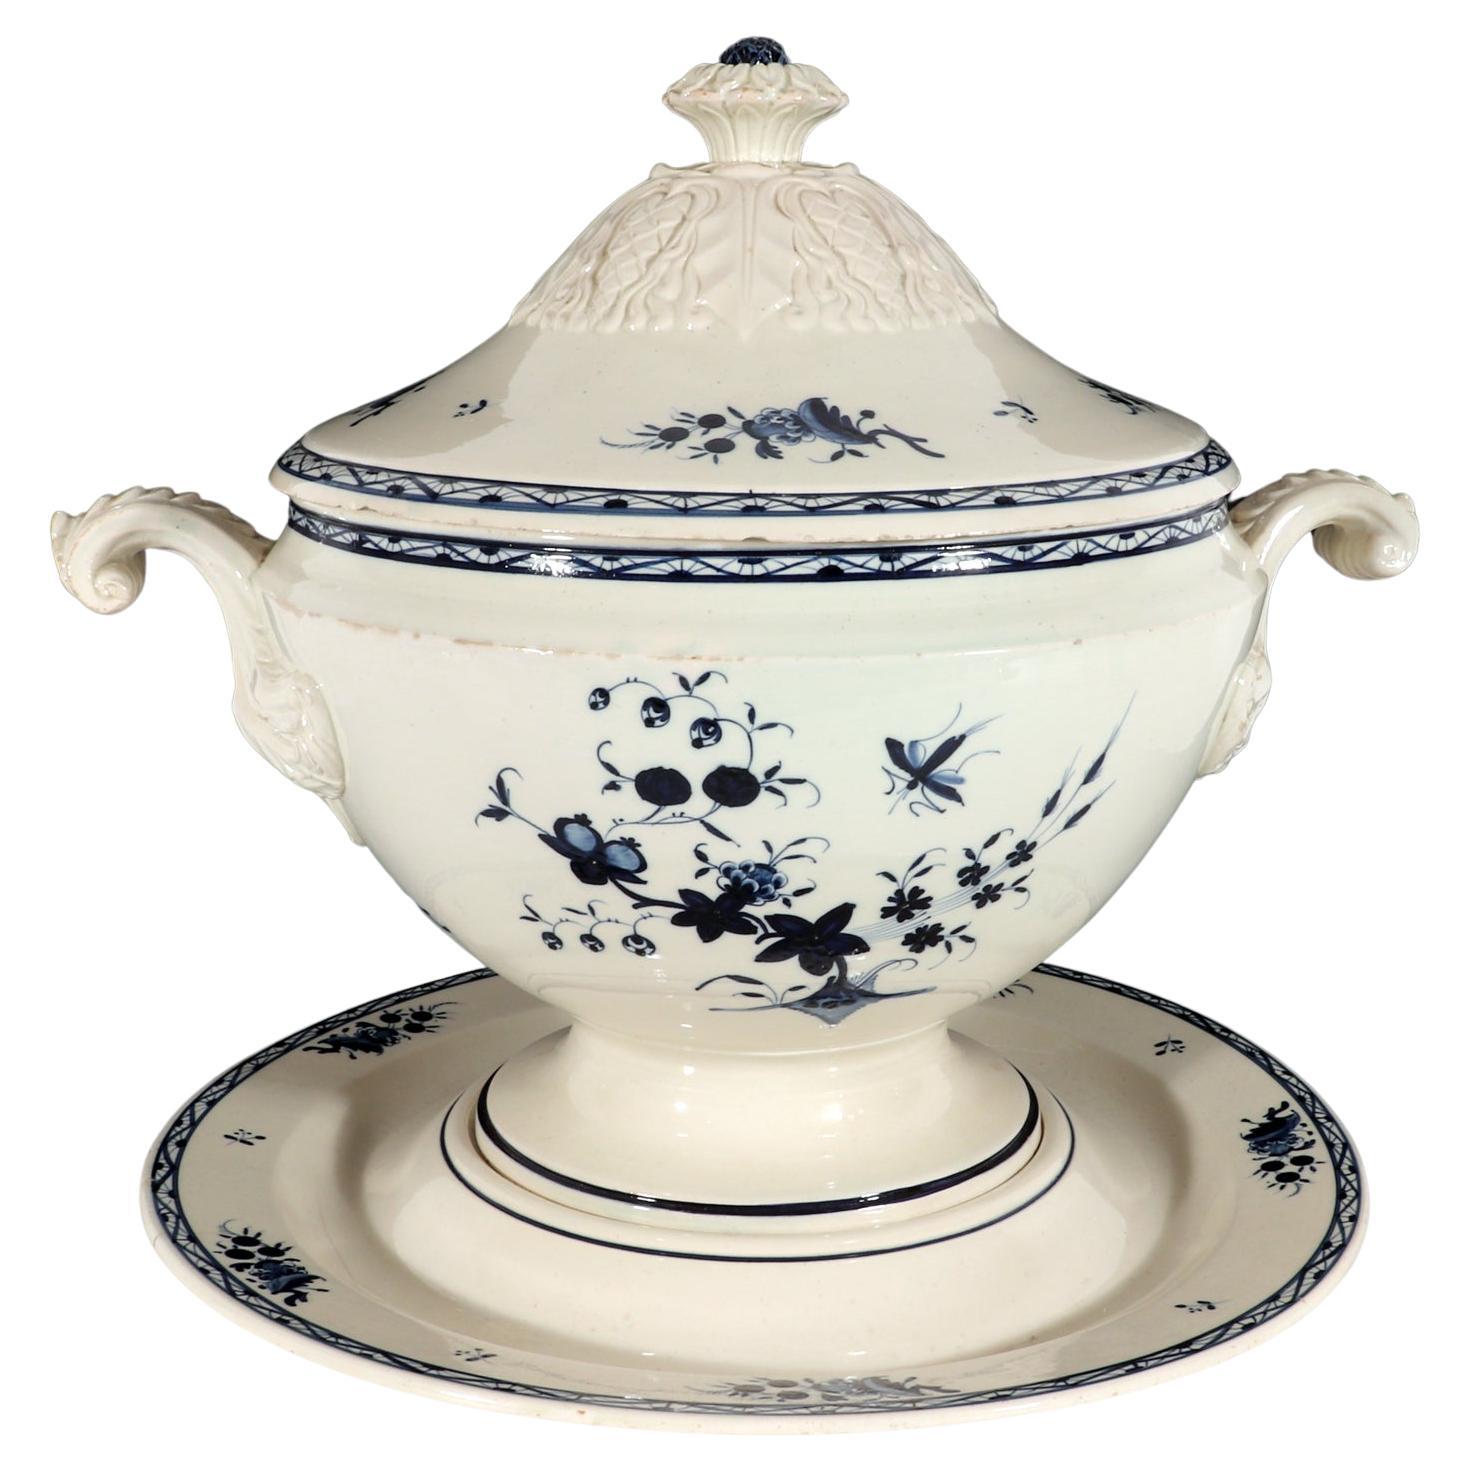 Grande soupière, couvercle et support en poterie continentale de style chinoiseries, manufacture Nimy